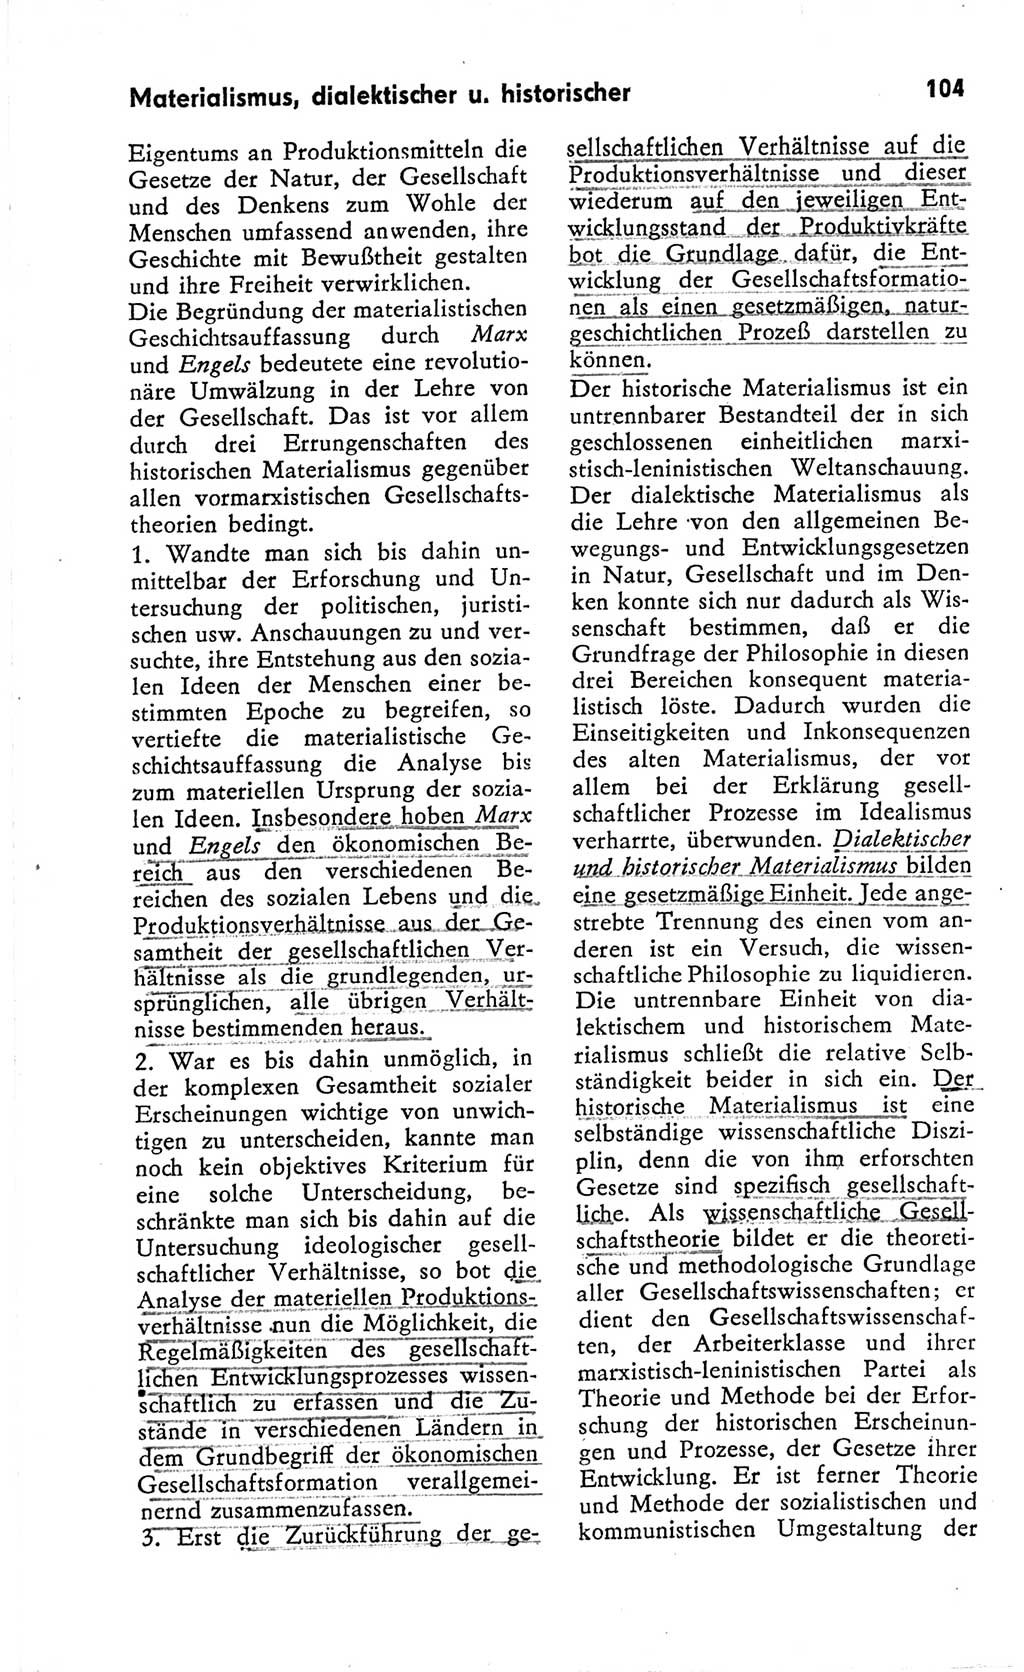 Kleines Wörterbuch der marxistisch-leninistischen Philosophie [Deutsche Demokratische Republik (DDR)] 1966, Seite 104 (Kl. Wb. ML Phil. DDR 1966, S. 104)